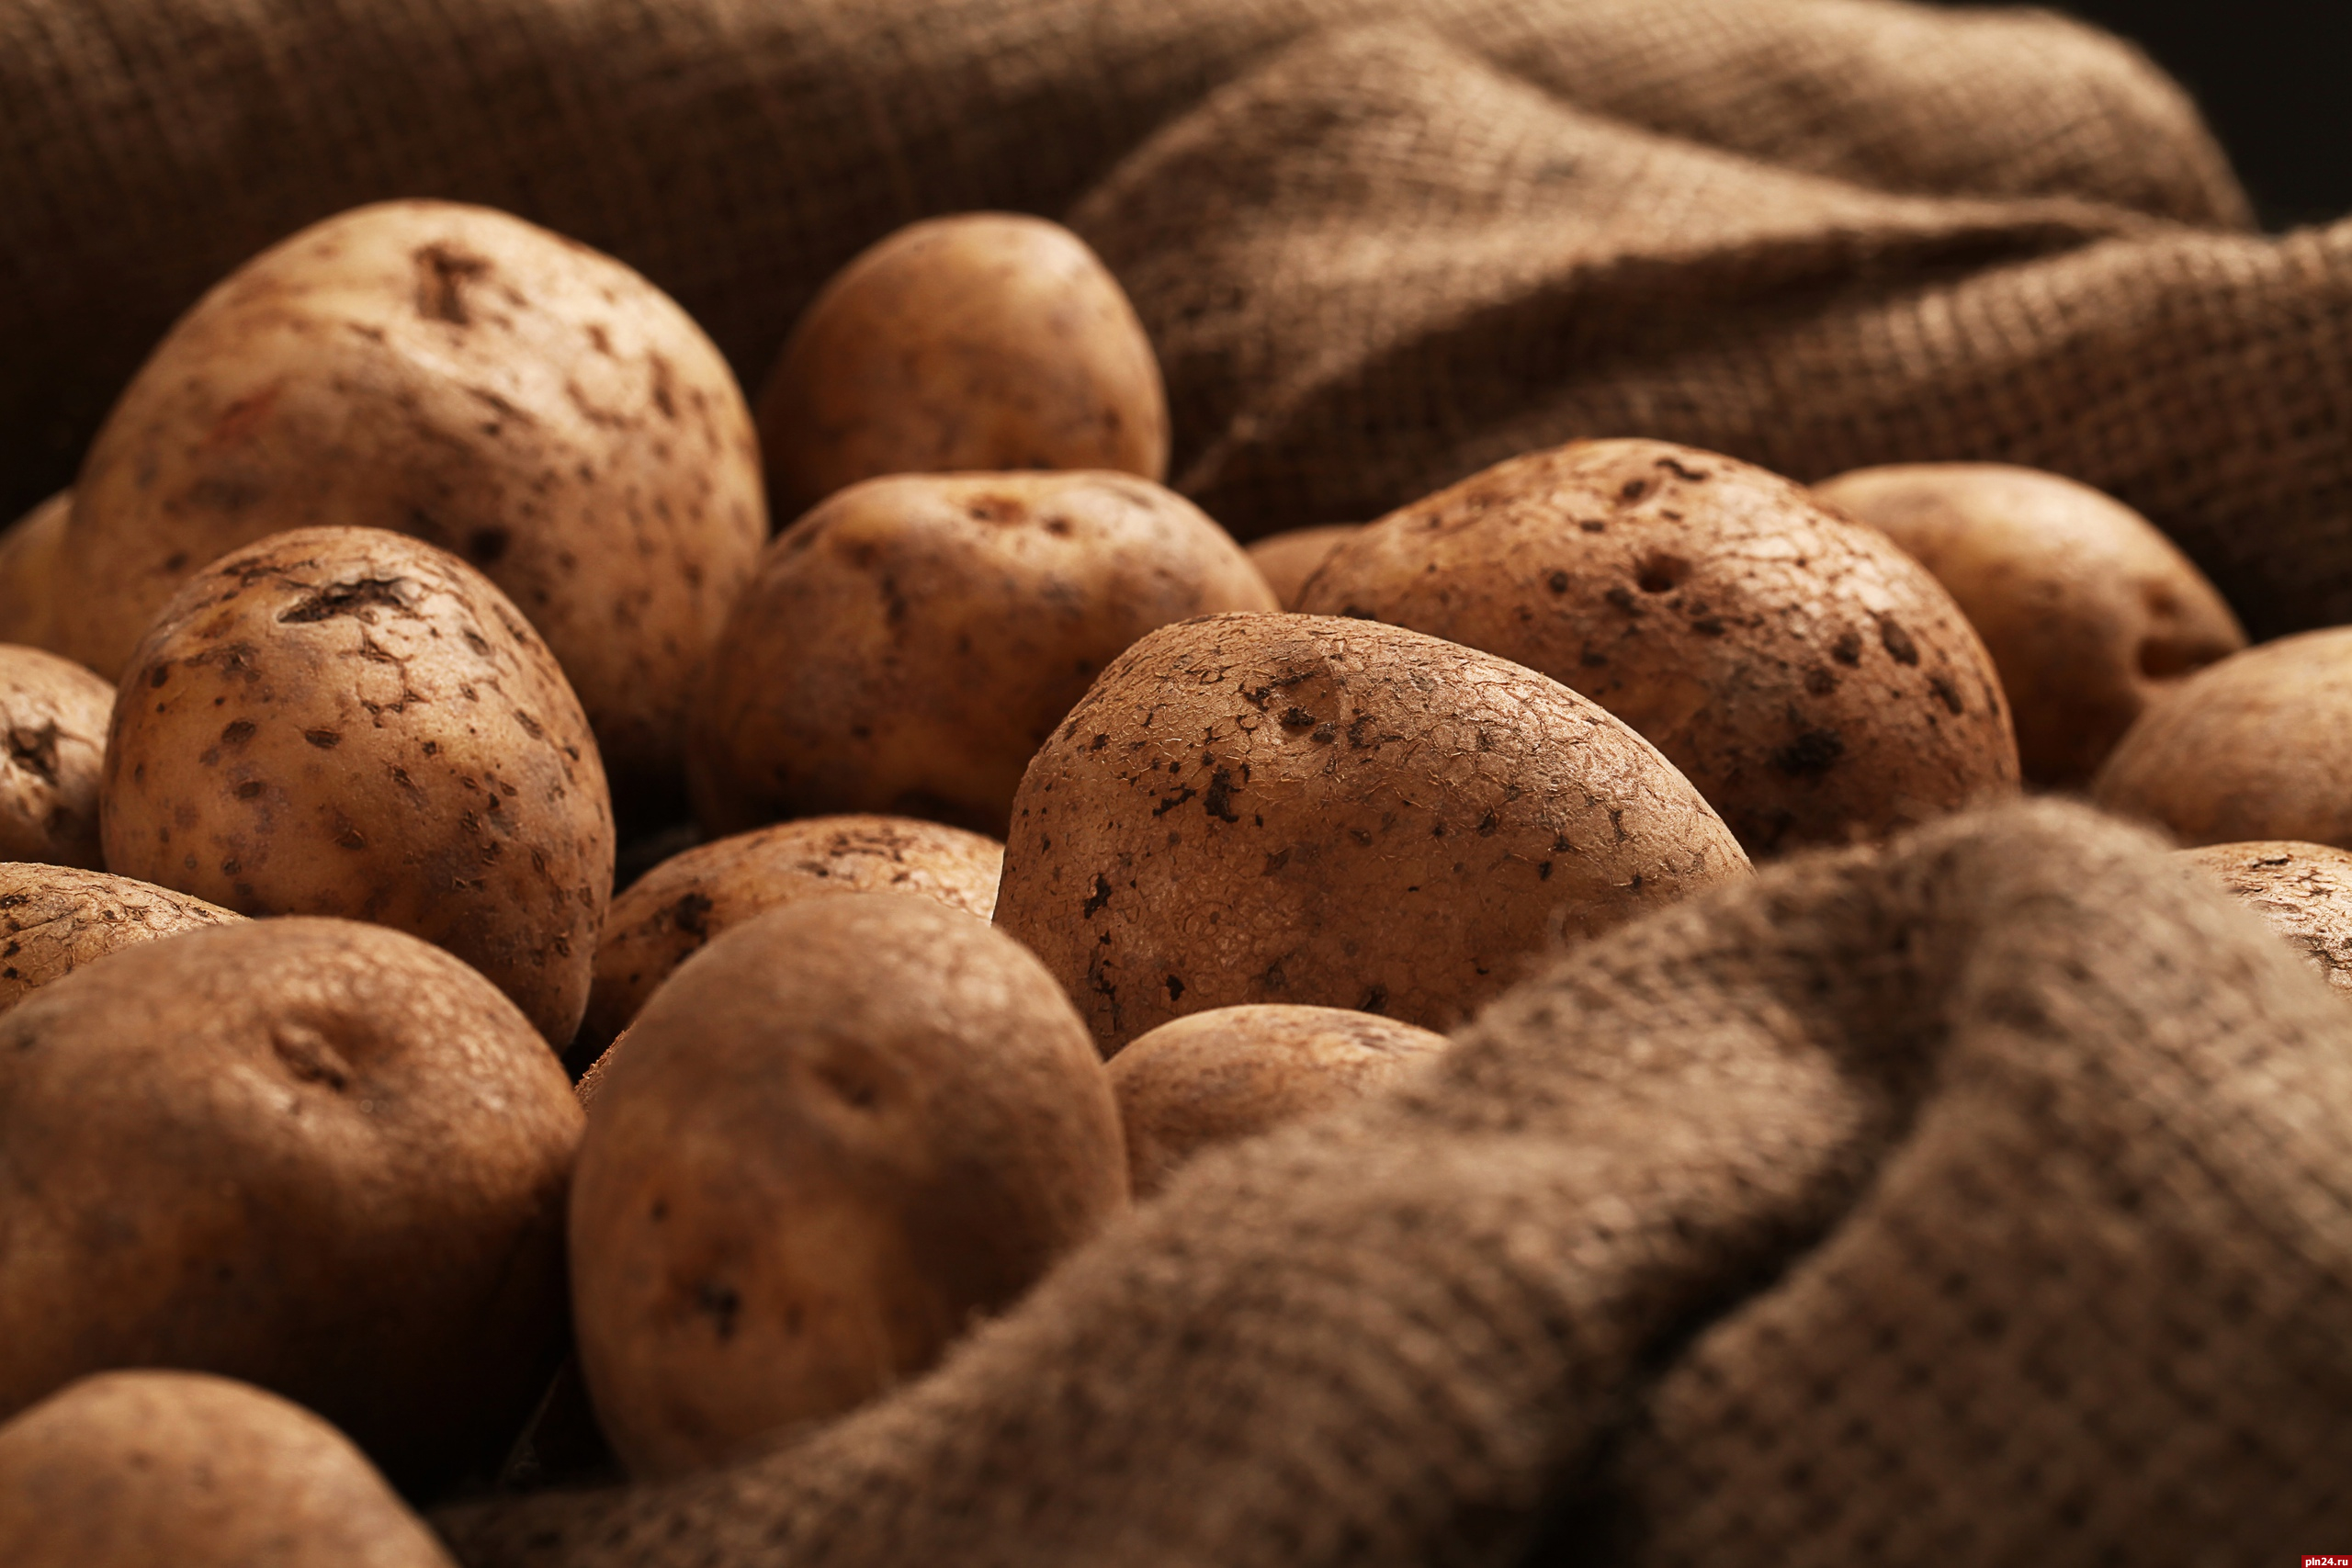 37% владельцев земельных участков в Пскове собираются сажать картофель в этом году - опрос